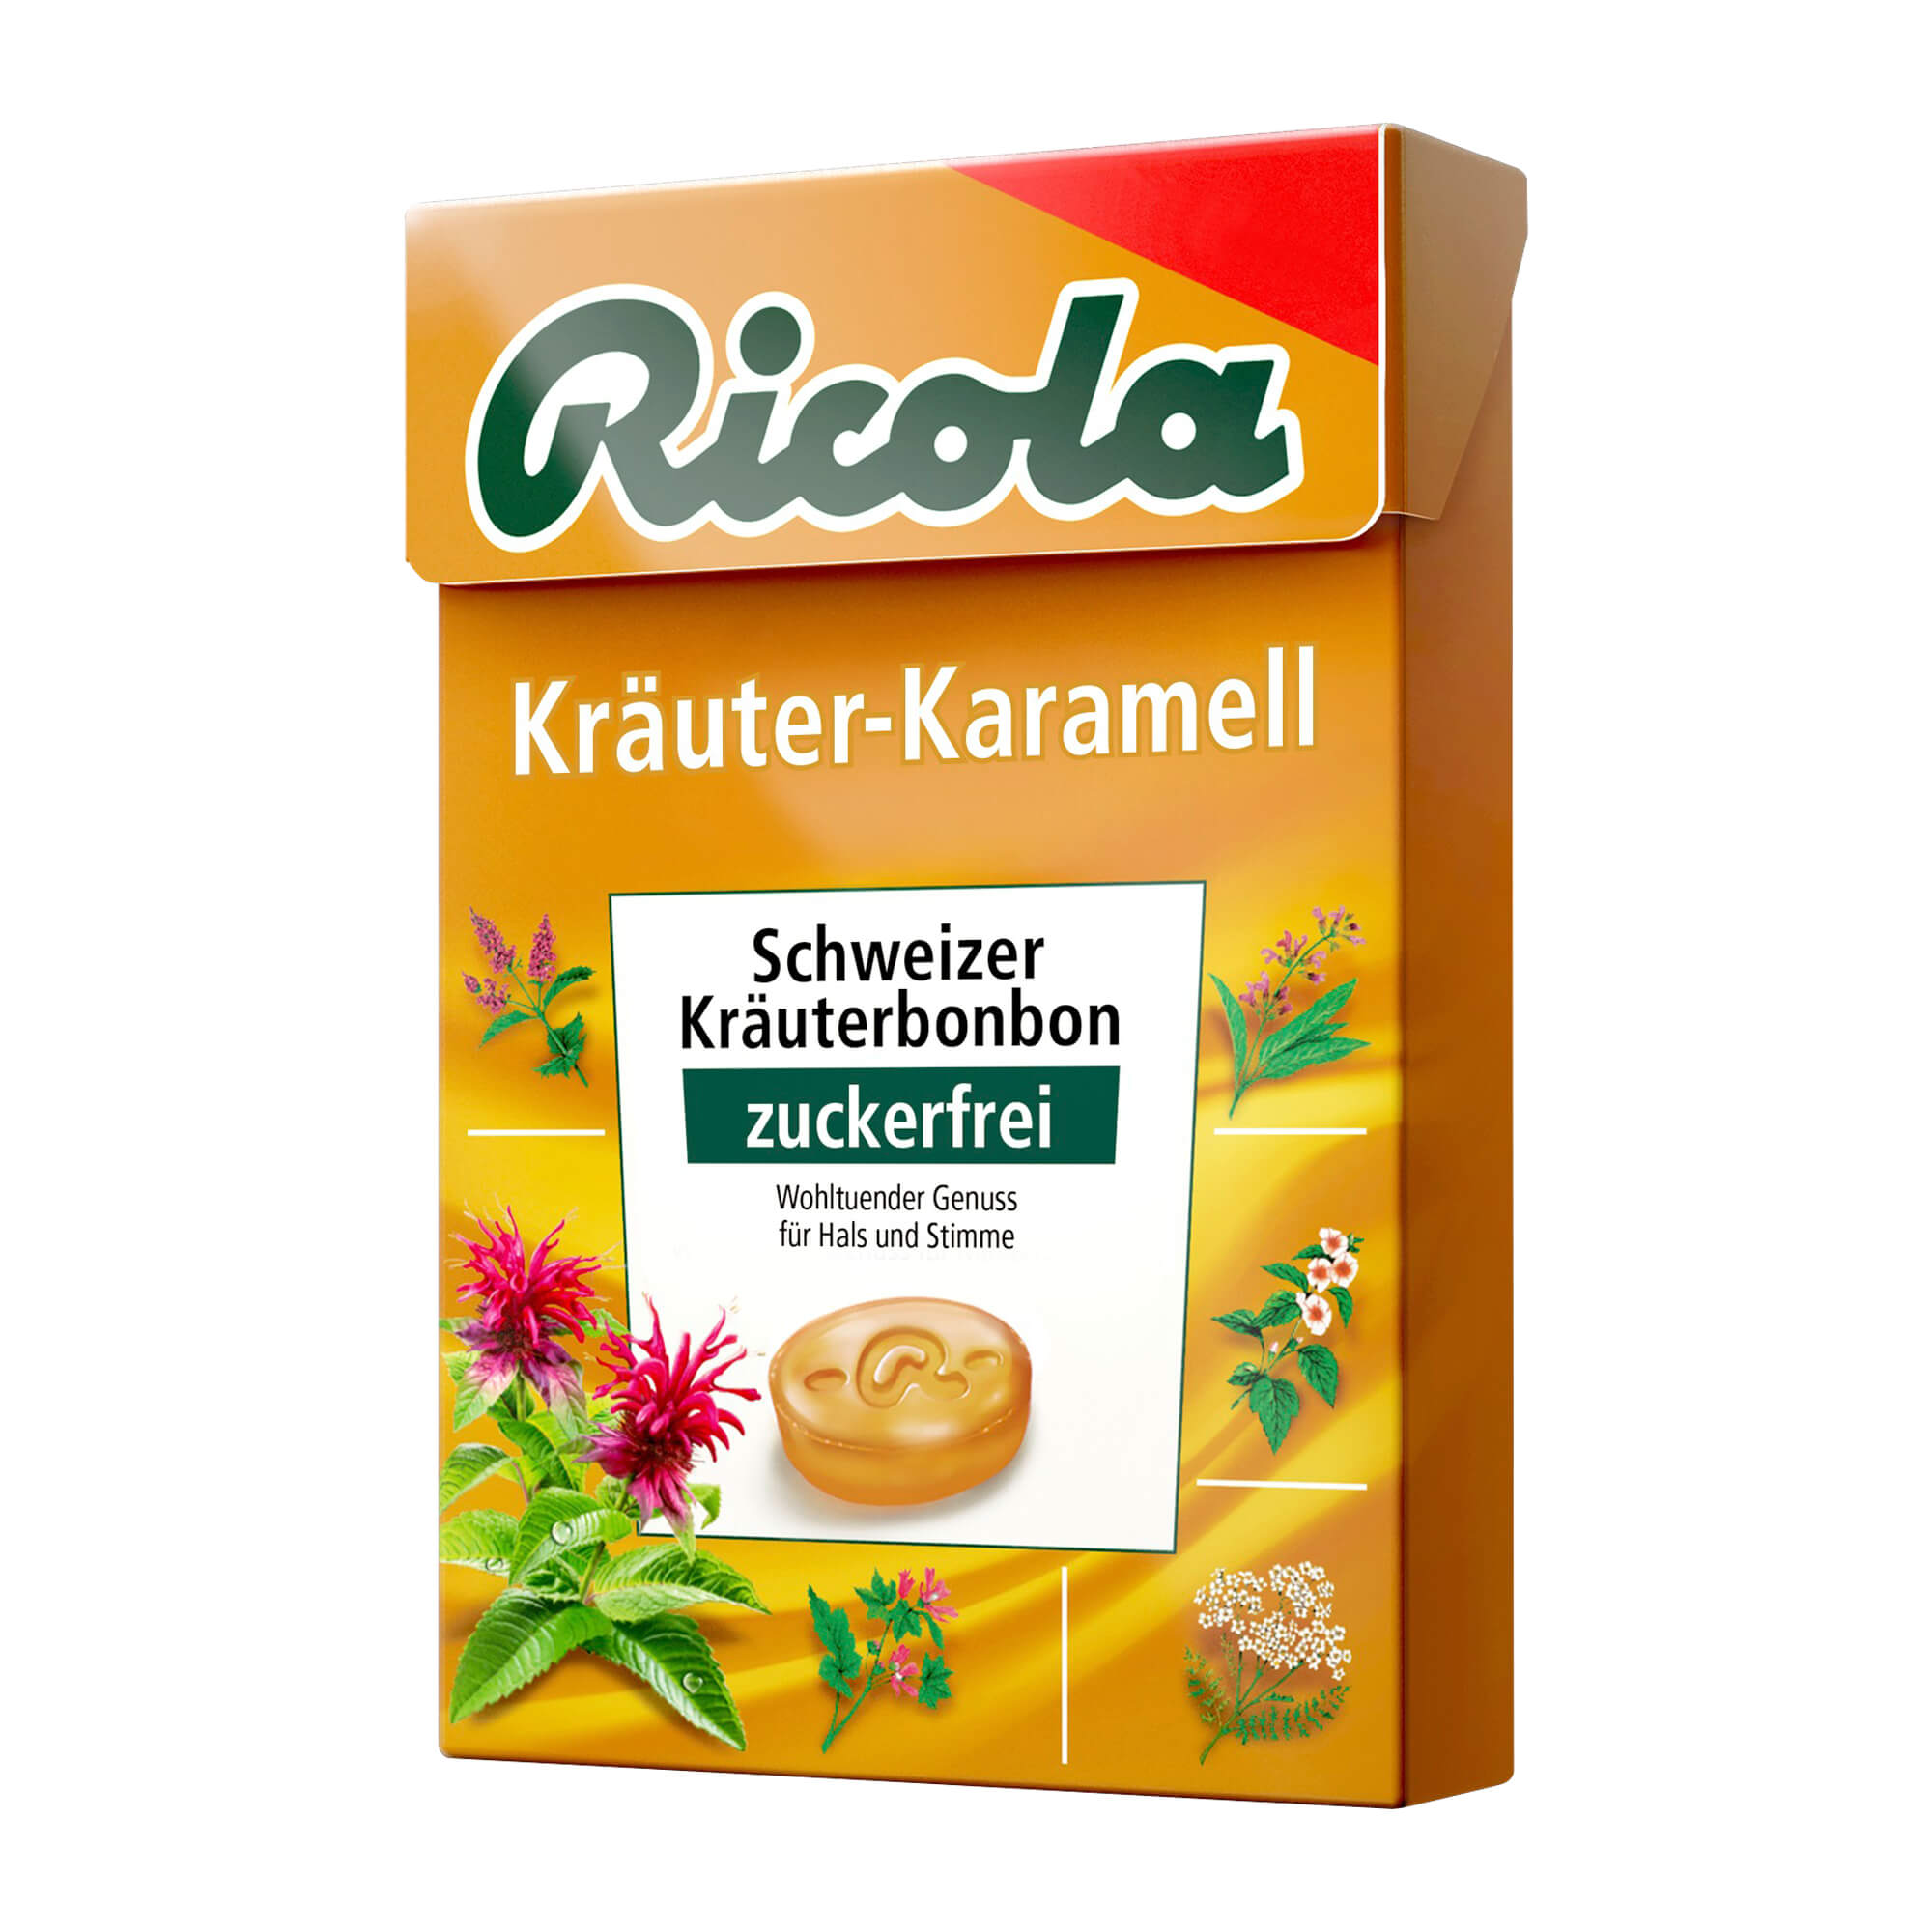 Zuckerfreie schweizer Kräuter-Karmaellbonbons mit Süßungsmitteln.